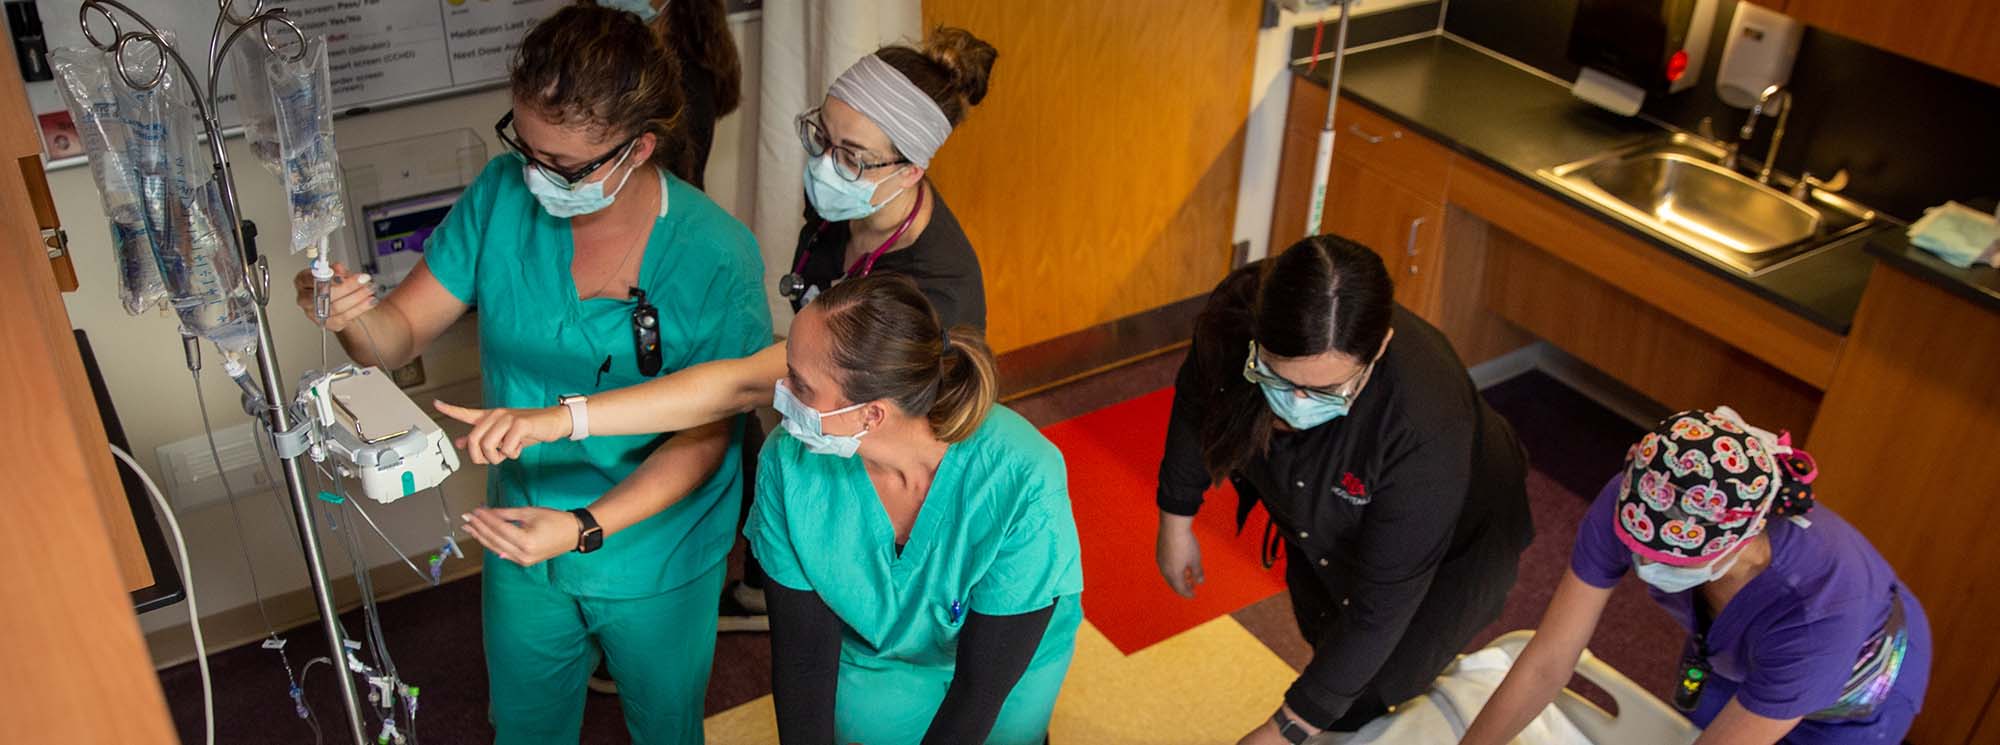 Բուժքույր ուսանողները միասին աշխատում են հիվանդի վրա